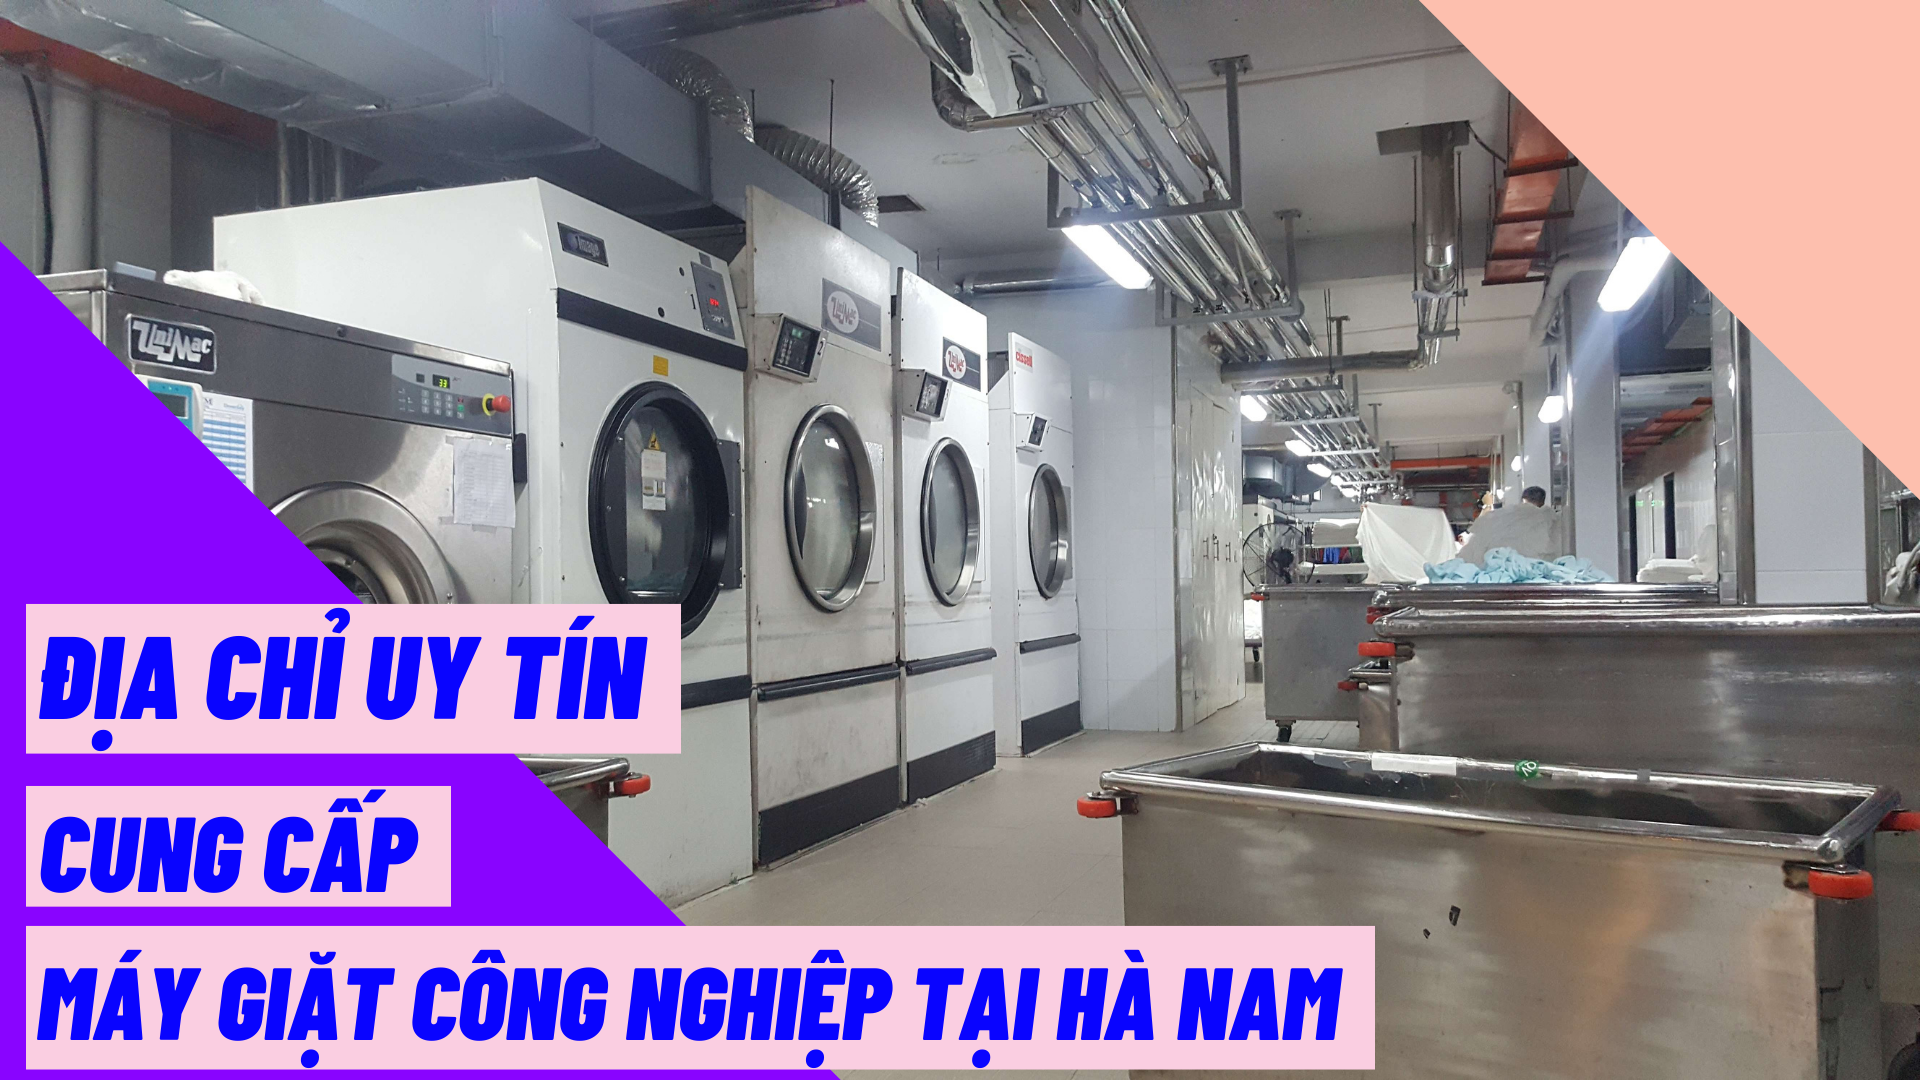 Địa chỉ uy tín cung cấp máy giặt công nghiệp tại Hà Nam